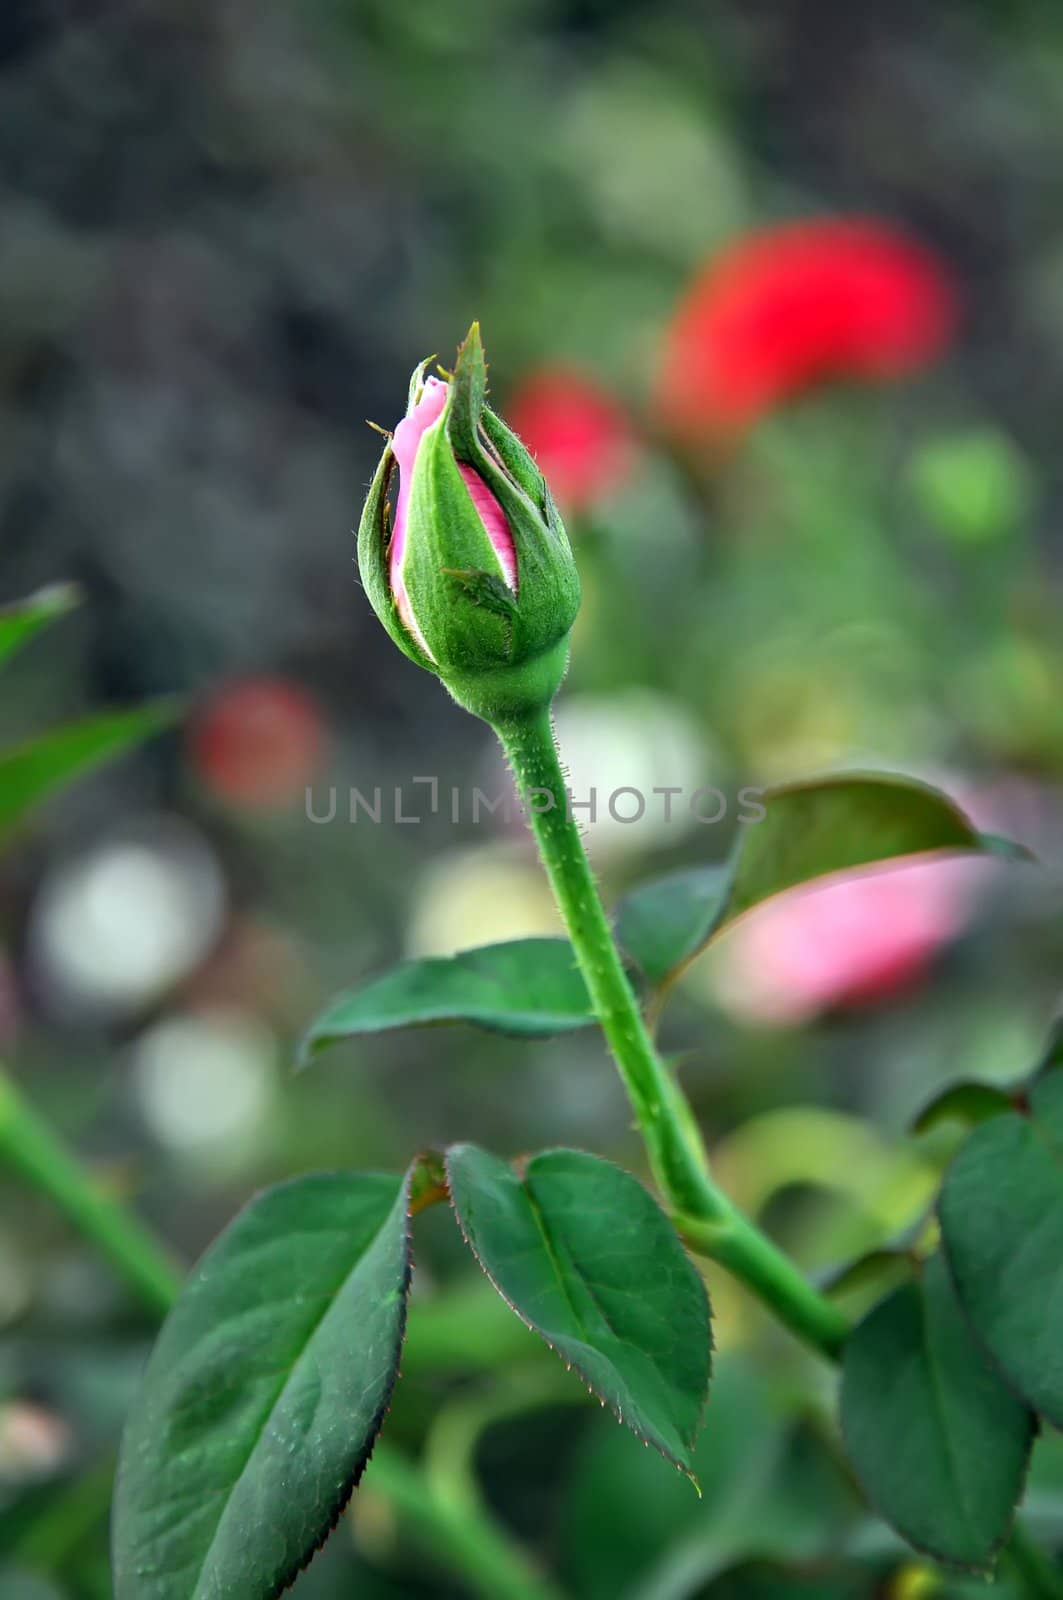 bud of rose flower